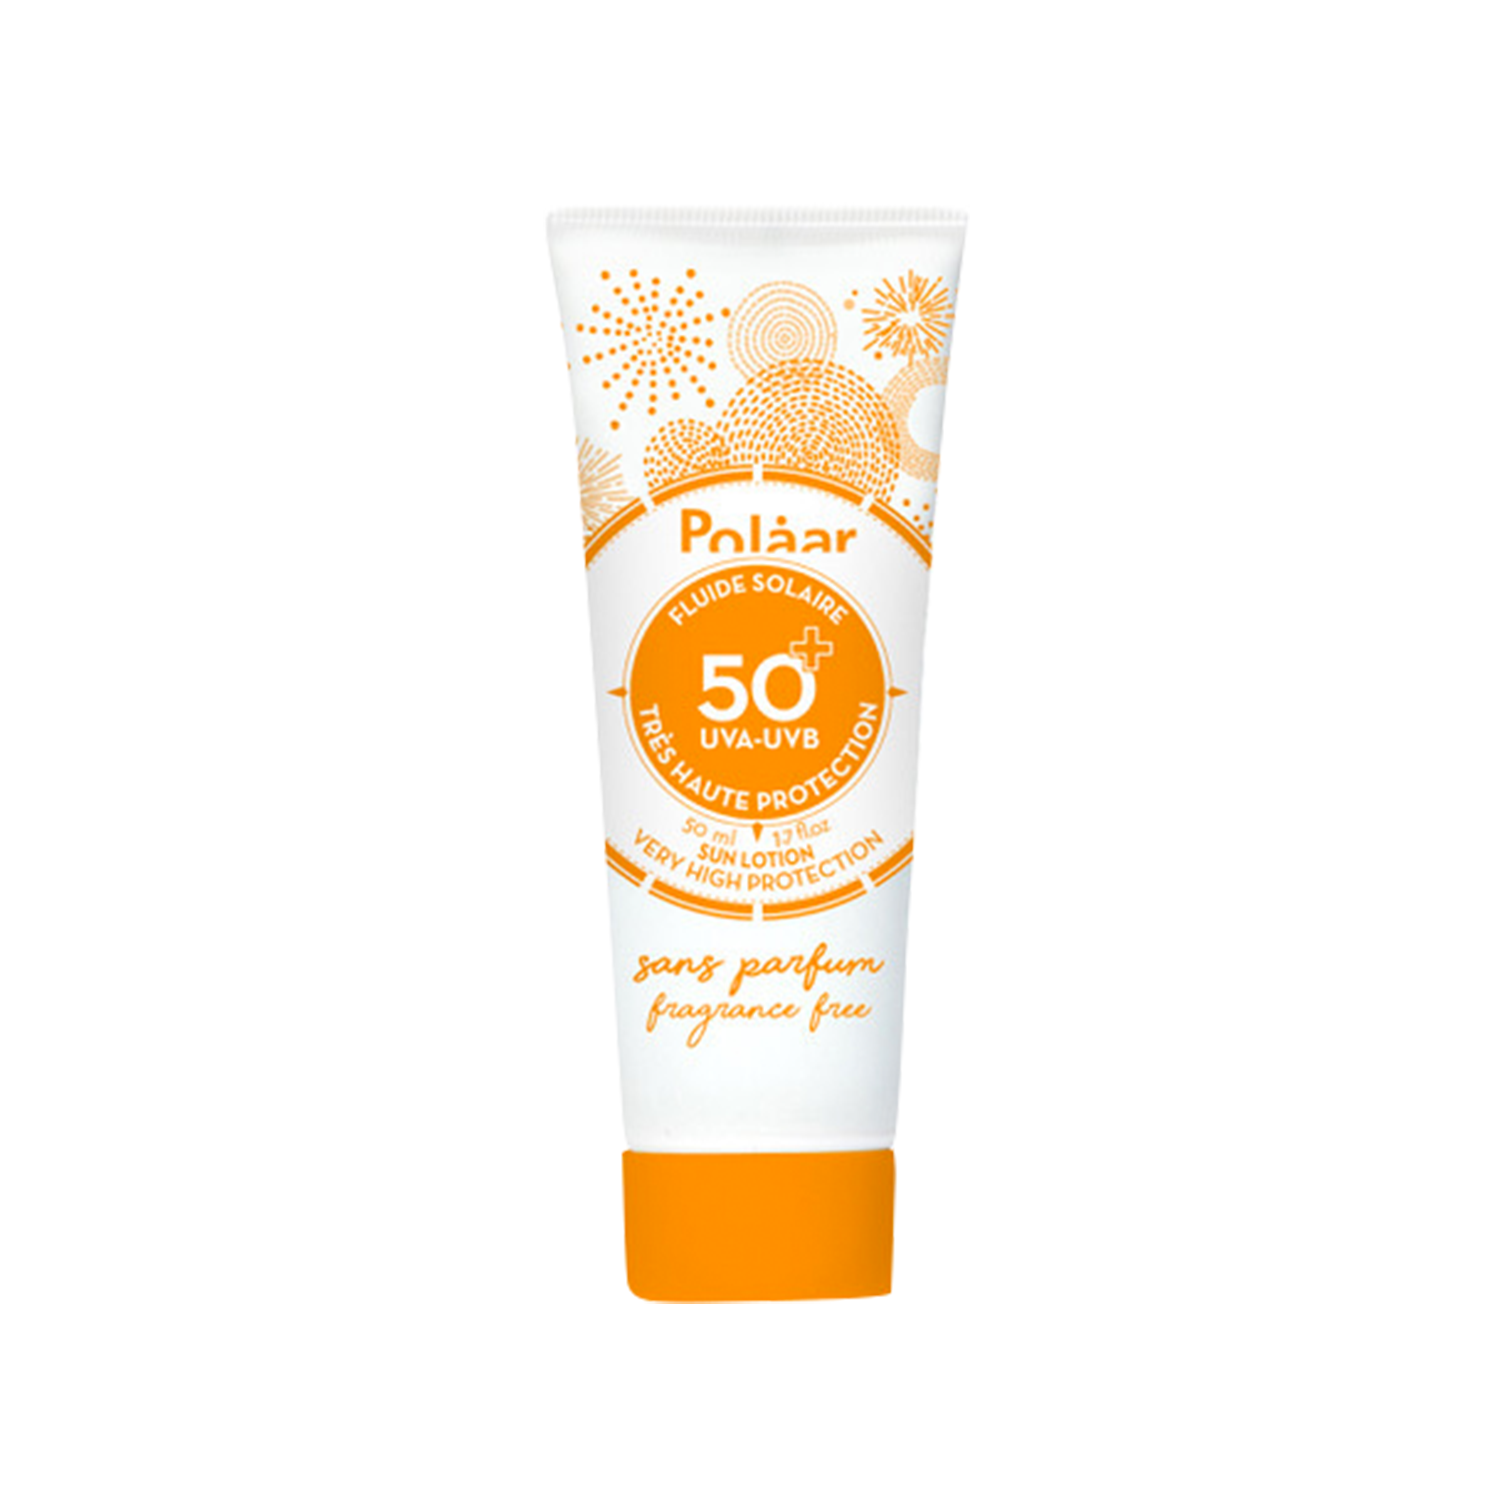 Polaar Sun Lotion SPF 50+ Very High Protection fragrance free